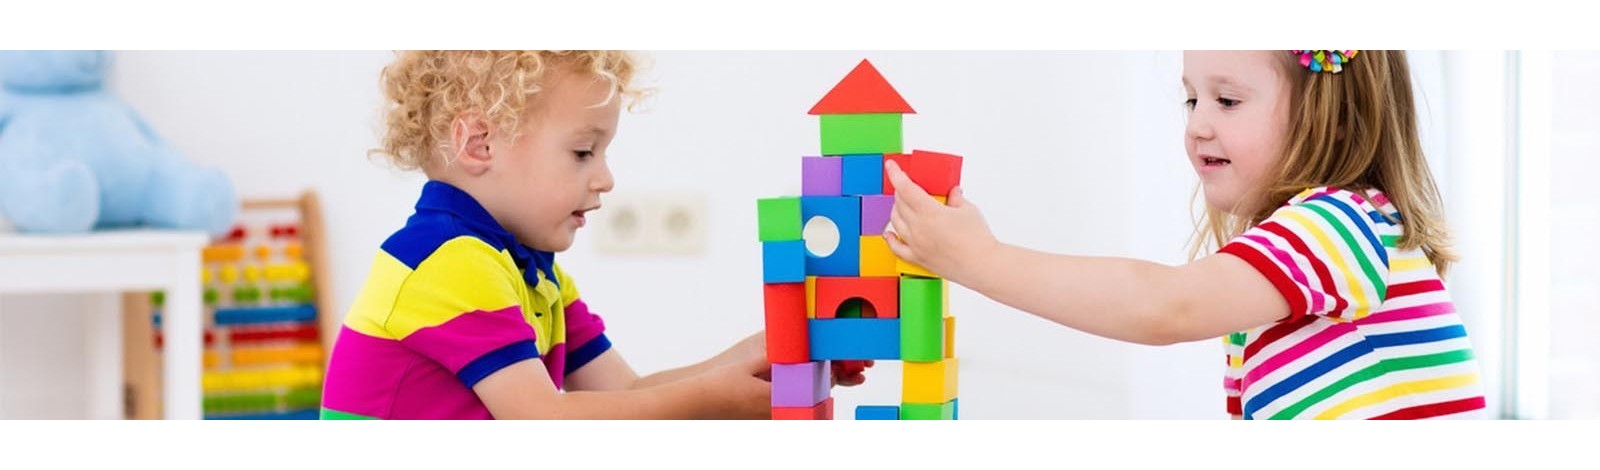 Juegos y juguetes didácticos para niños de 3 a 4 años 